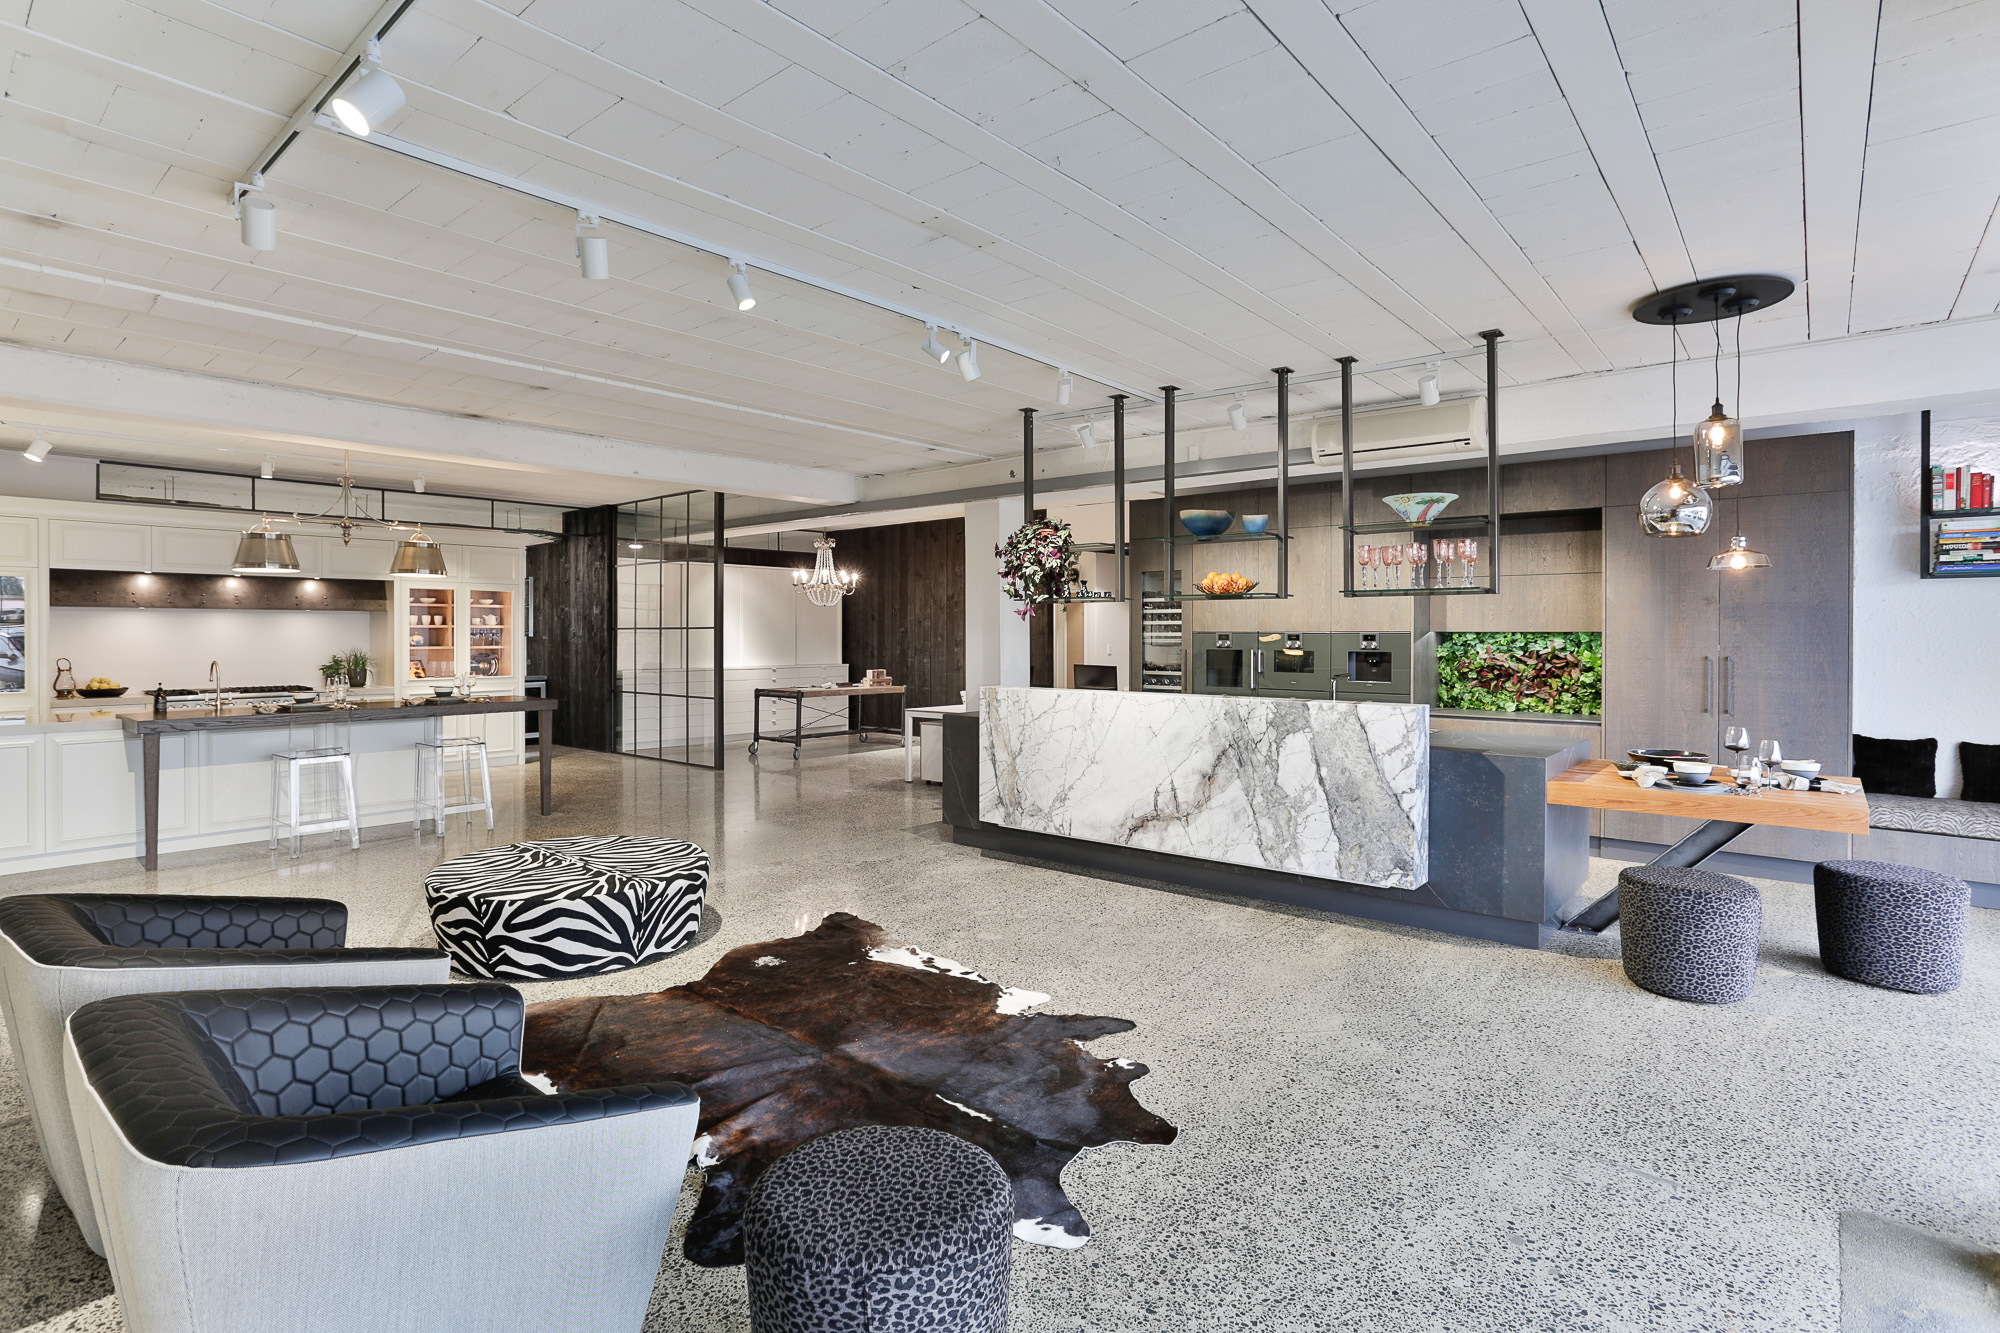 Kitchens By Design Interior Designers NZ ArchiPro